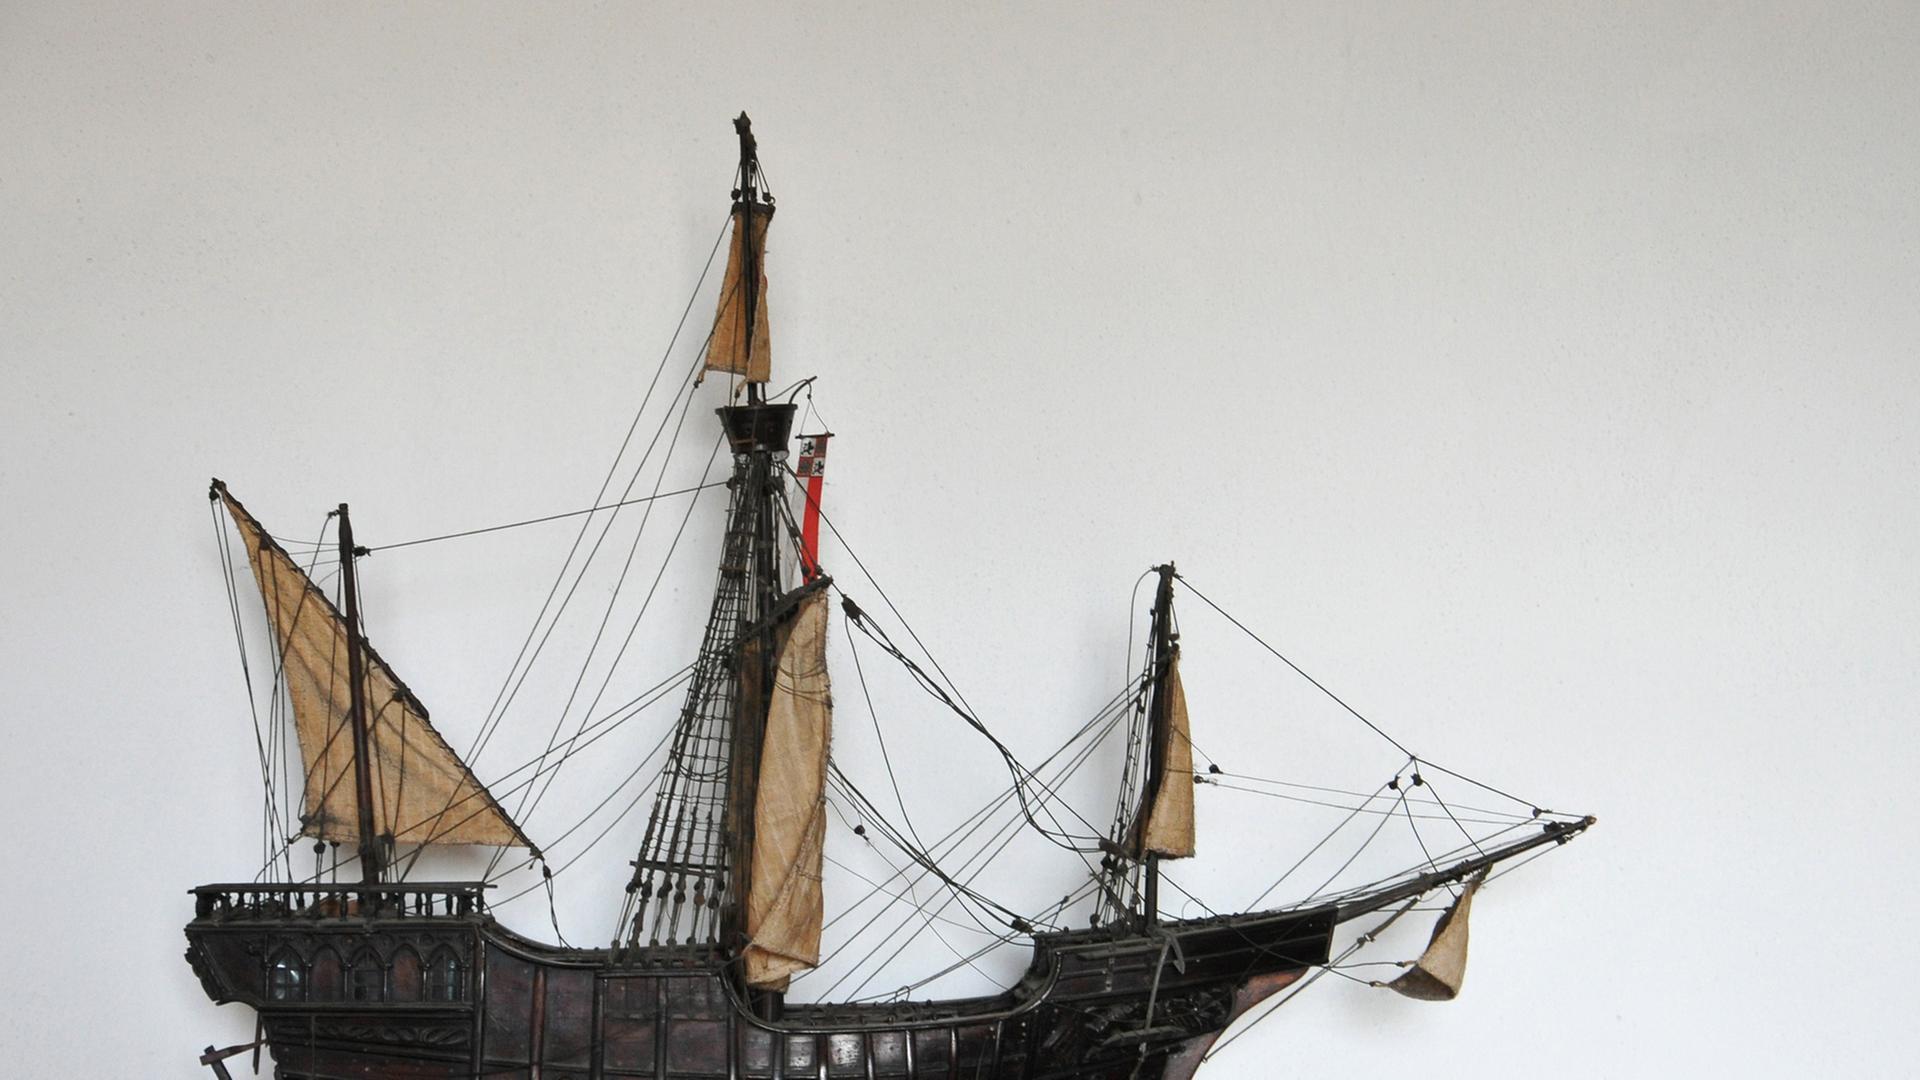 Schiffsmodell der Pinta, dem Schiff mit dem Kolumbus nach Amerika gesegelt ist.